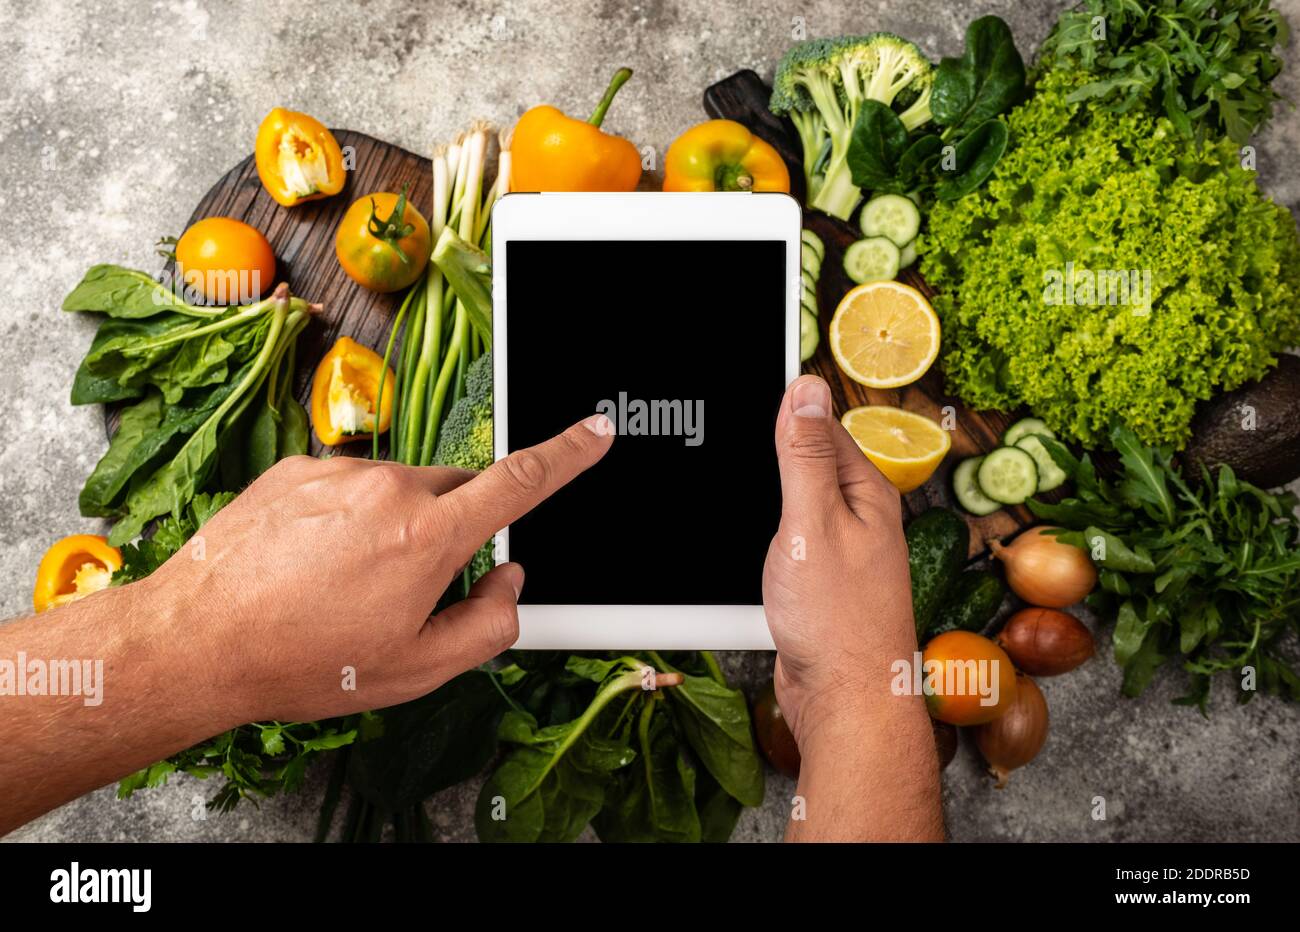 Ordine consegna cibo on-line concetto. Le mani maschili tengono il computer tablet con uno schermo vuoto sulle verdure fresche. Primo piano Foto Stock